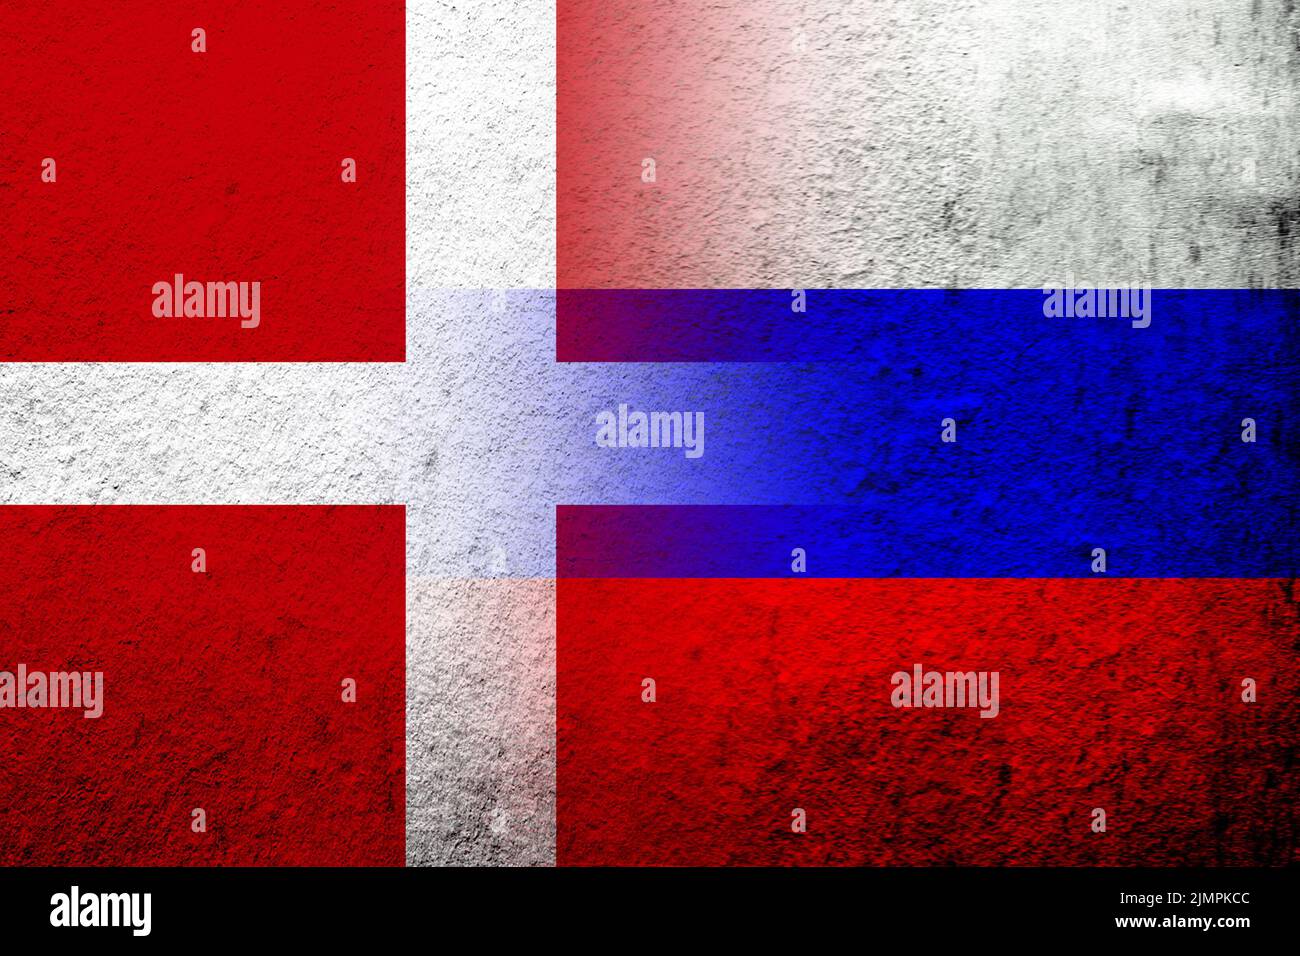 Drapeau national de la Fédération de Russie avec le Royaume du Danemark drapeau national. Grunge l'arrière-plan Banque D'Images